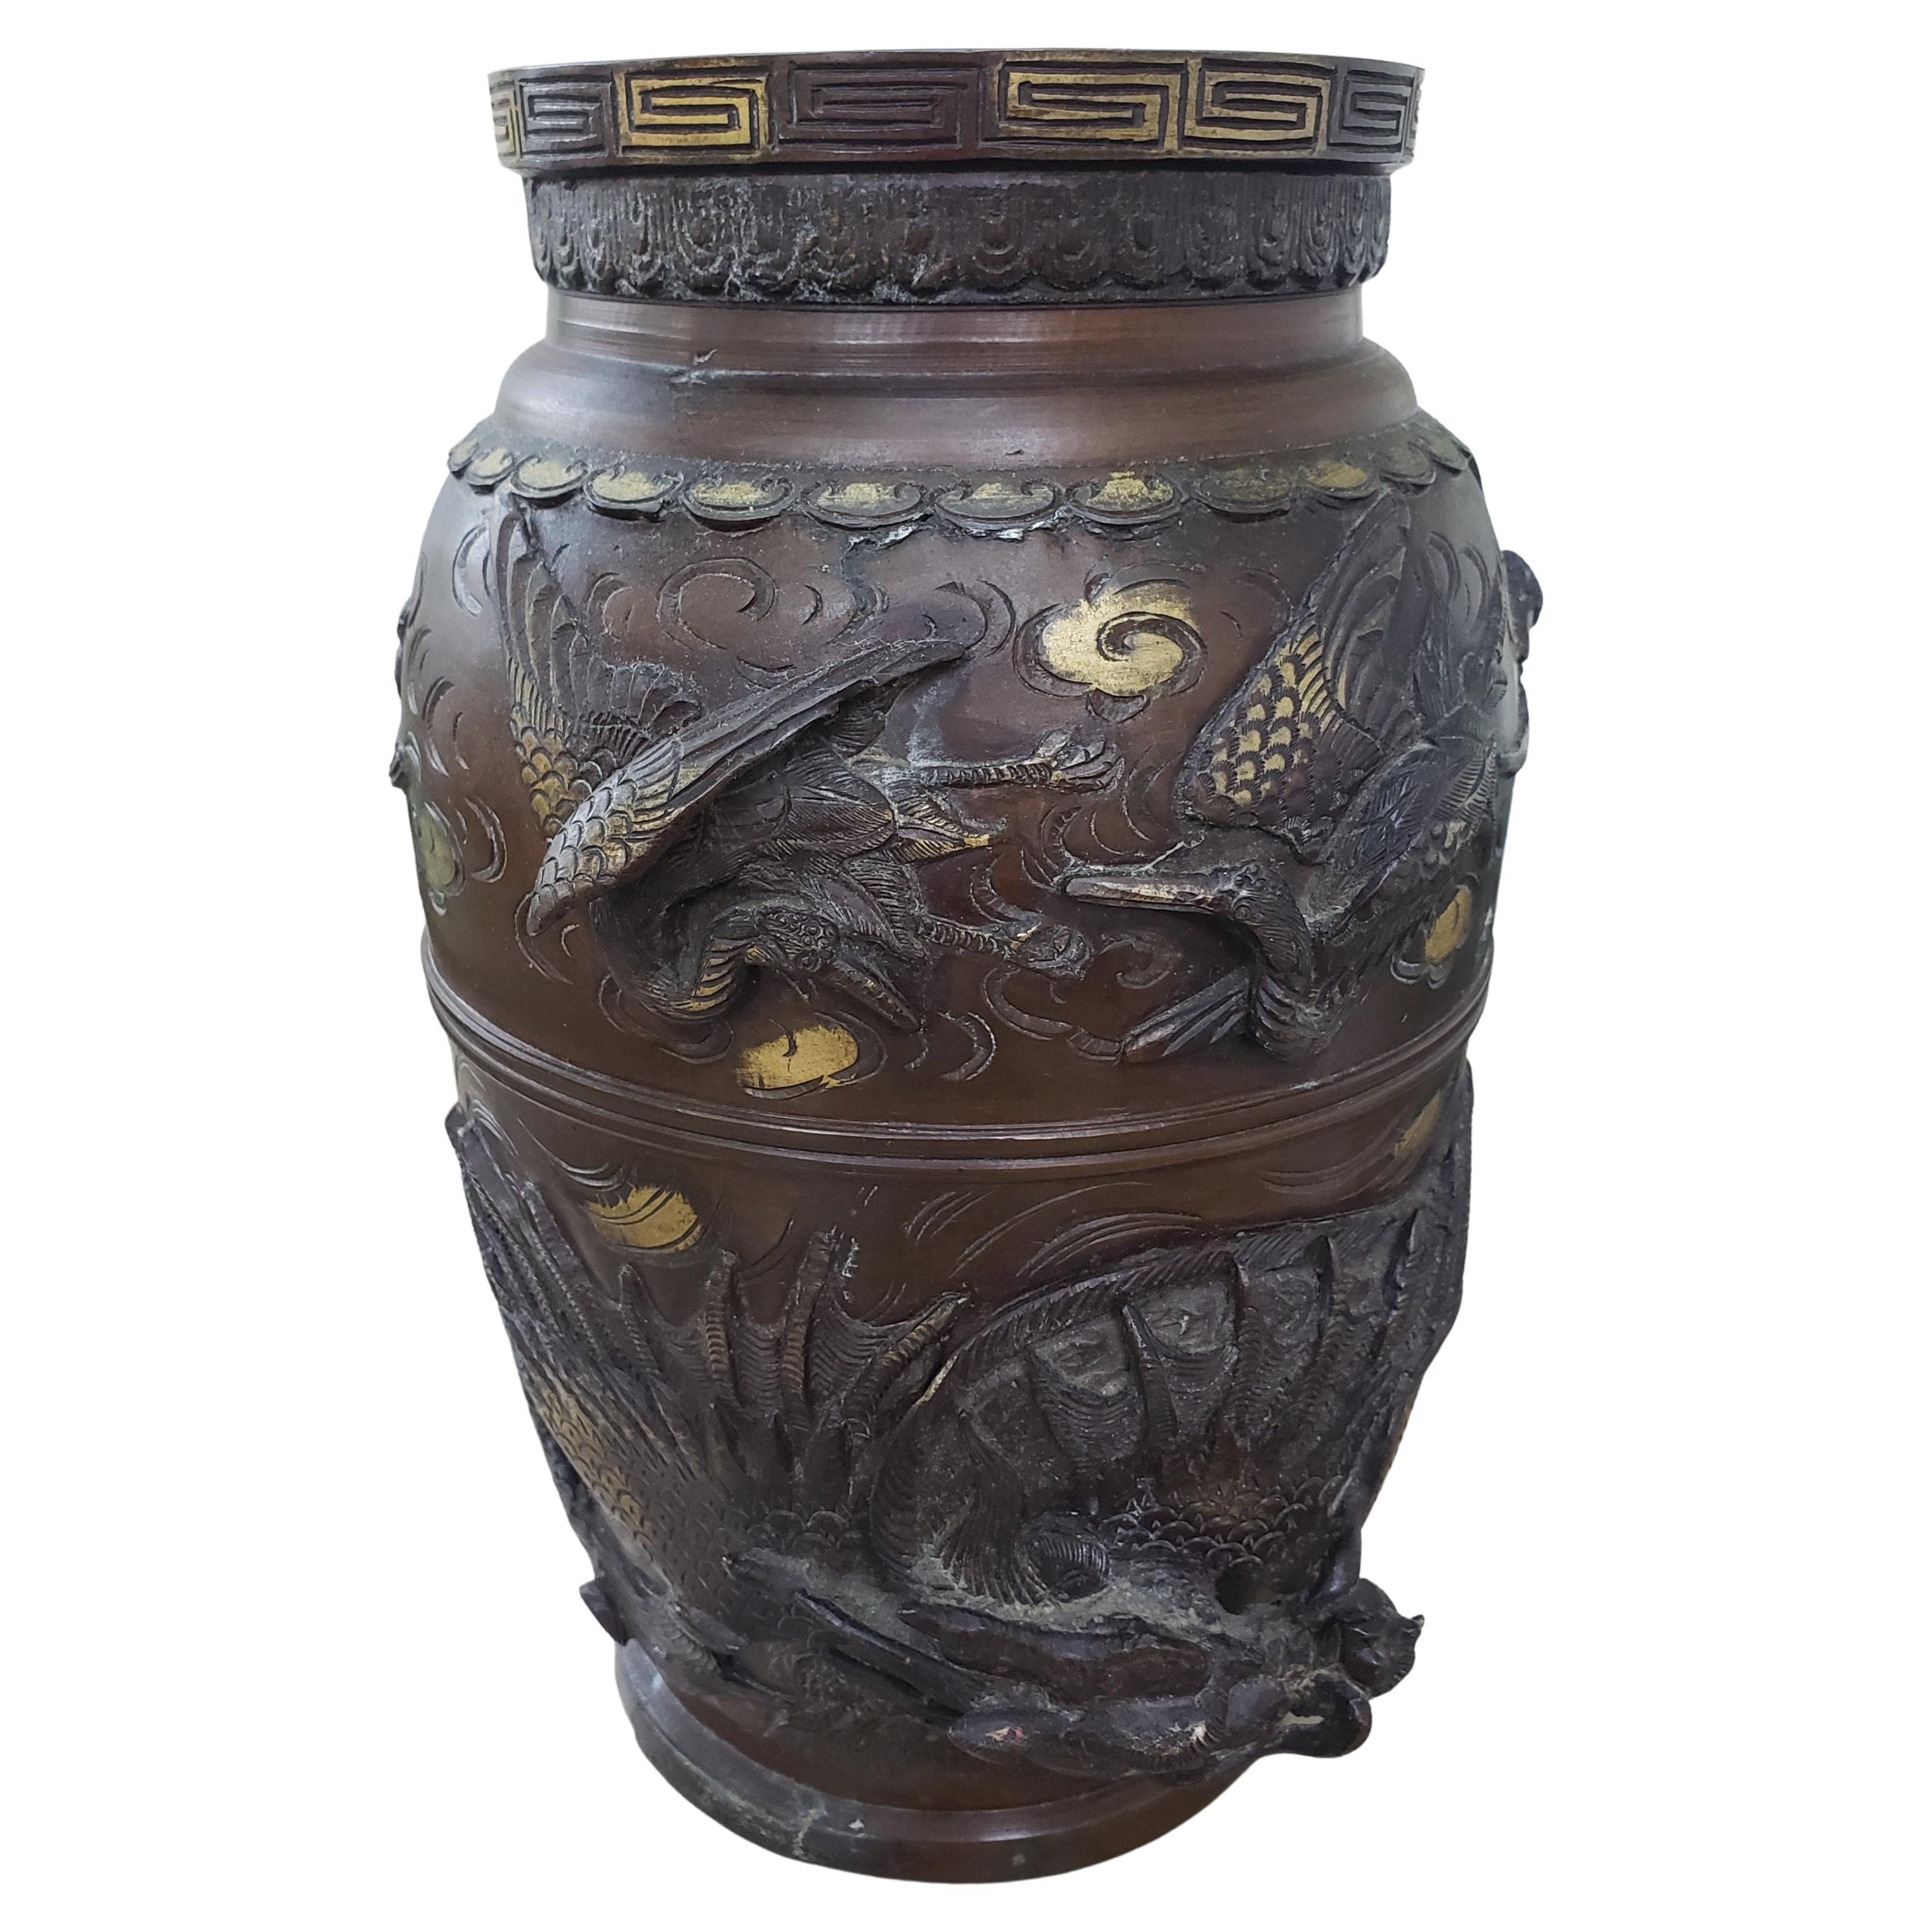 Étonnant vase en bronze japonais du XIXe siècle, circa 1860, avec d'exquises décorations de dragons et d'oiseaux en bronze en relief et de nombreuses autres décorations meiji originales. Il serait magnifique au bon endroit. La meilleure couleur et